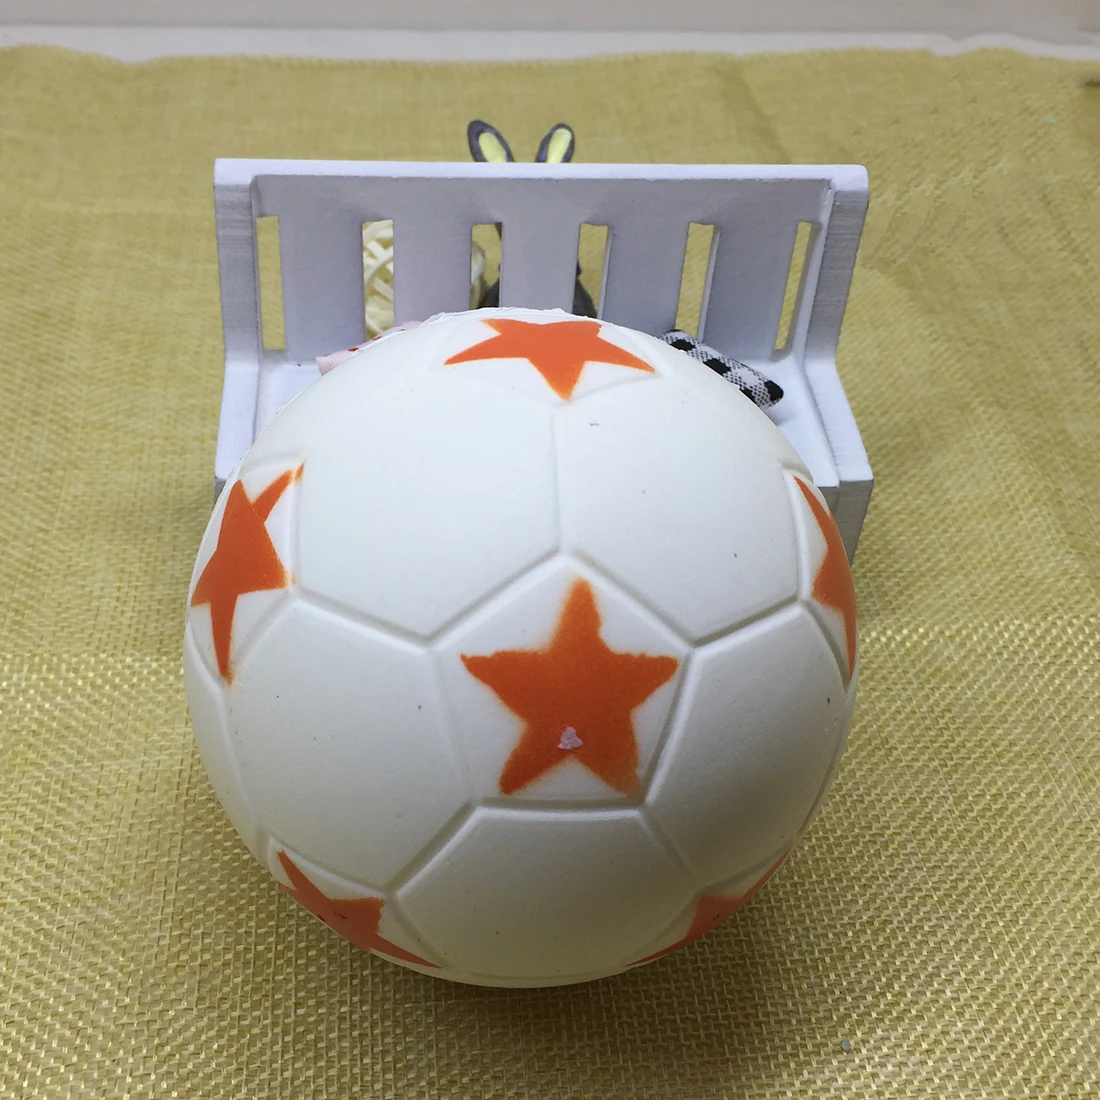 LCLL-9CM Забавный футбольный мягкий милый антистрессовый мяч Squeeze Slow увеличить детей удовольствие PU мягкое игрушки